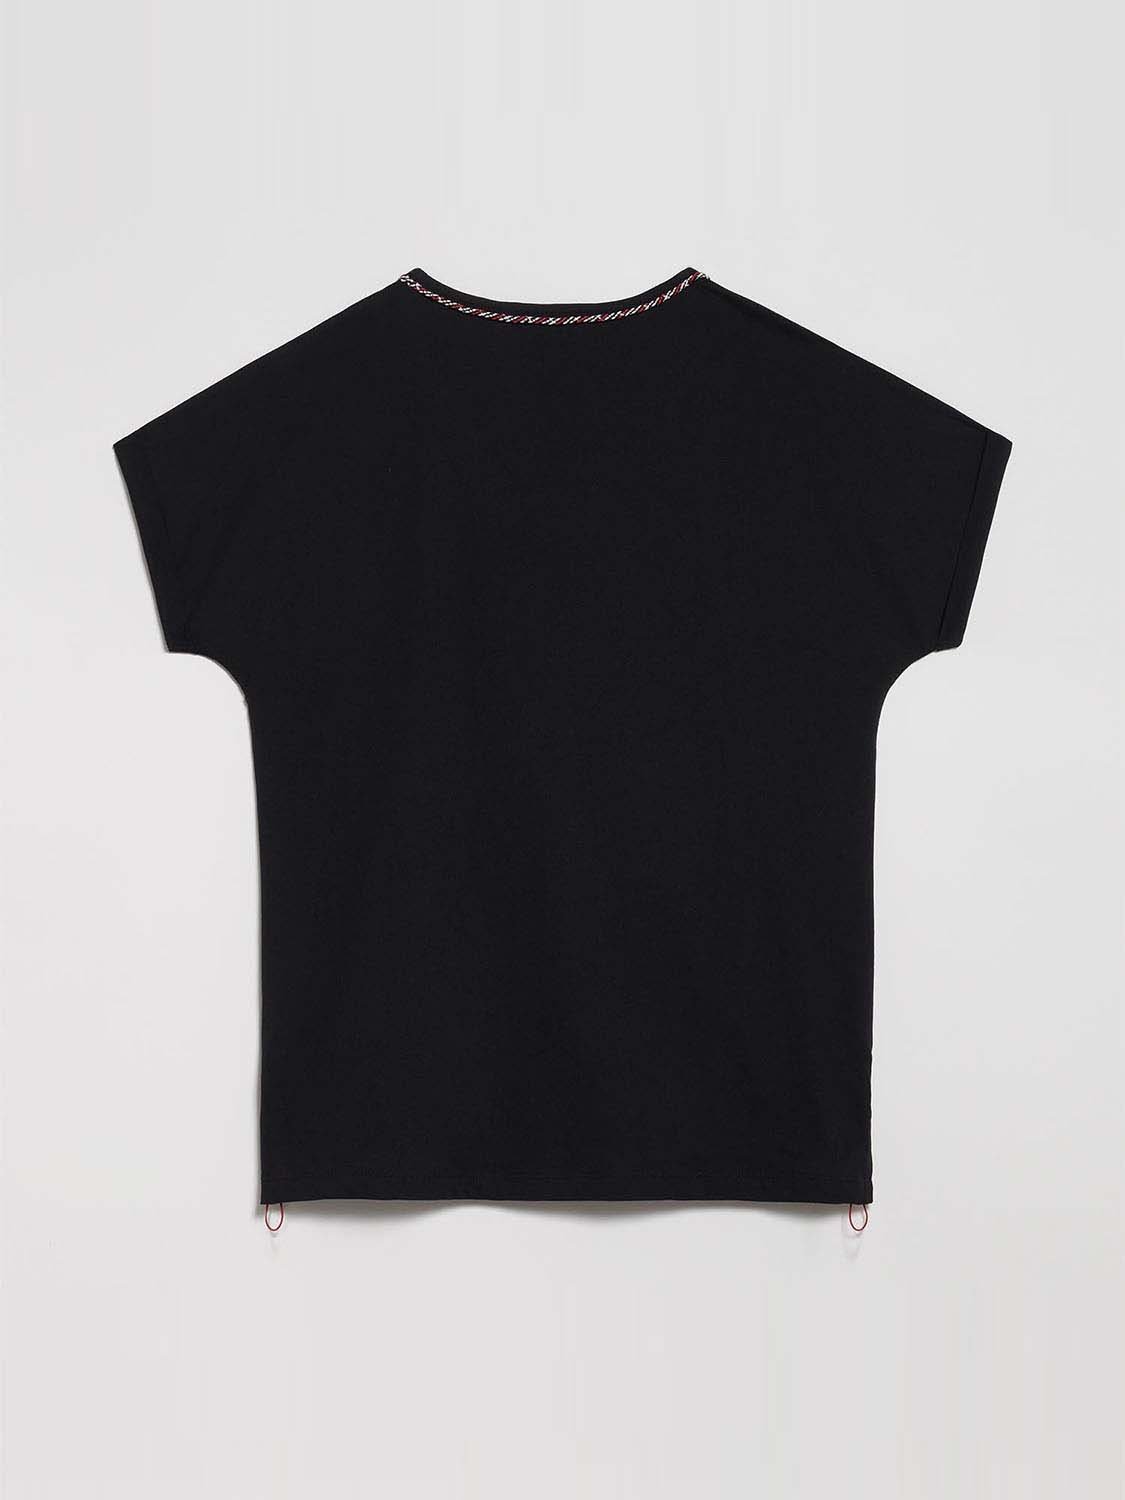 Tee Shirt Femme Coton Biologique Noir